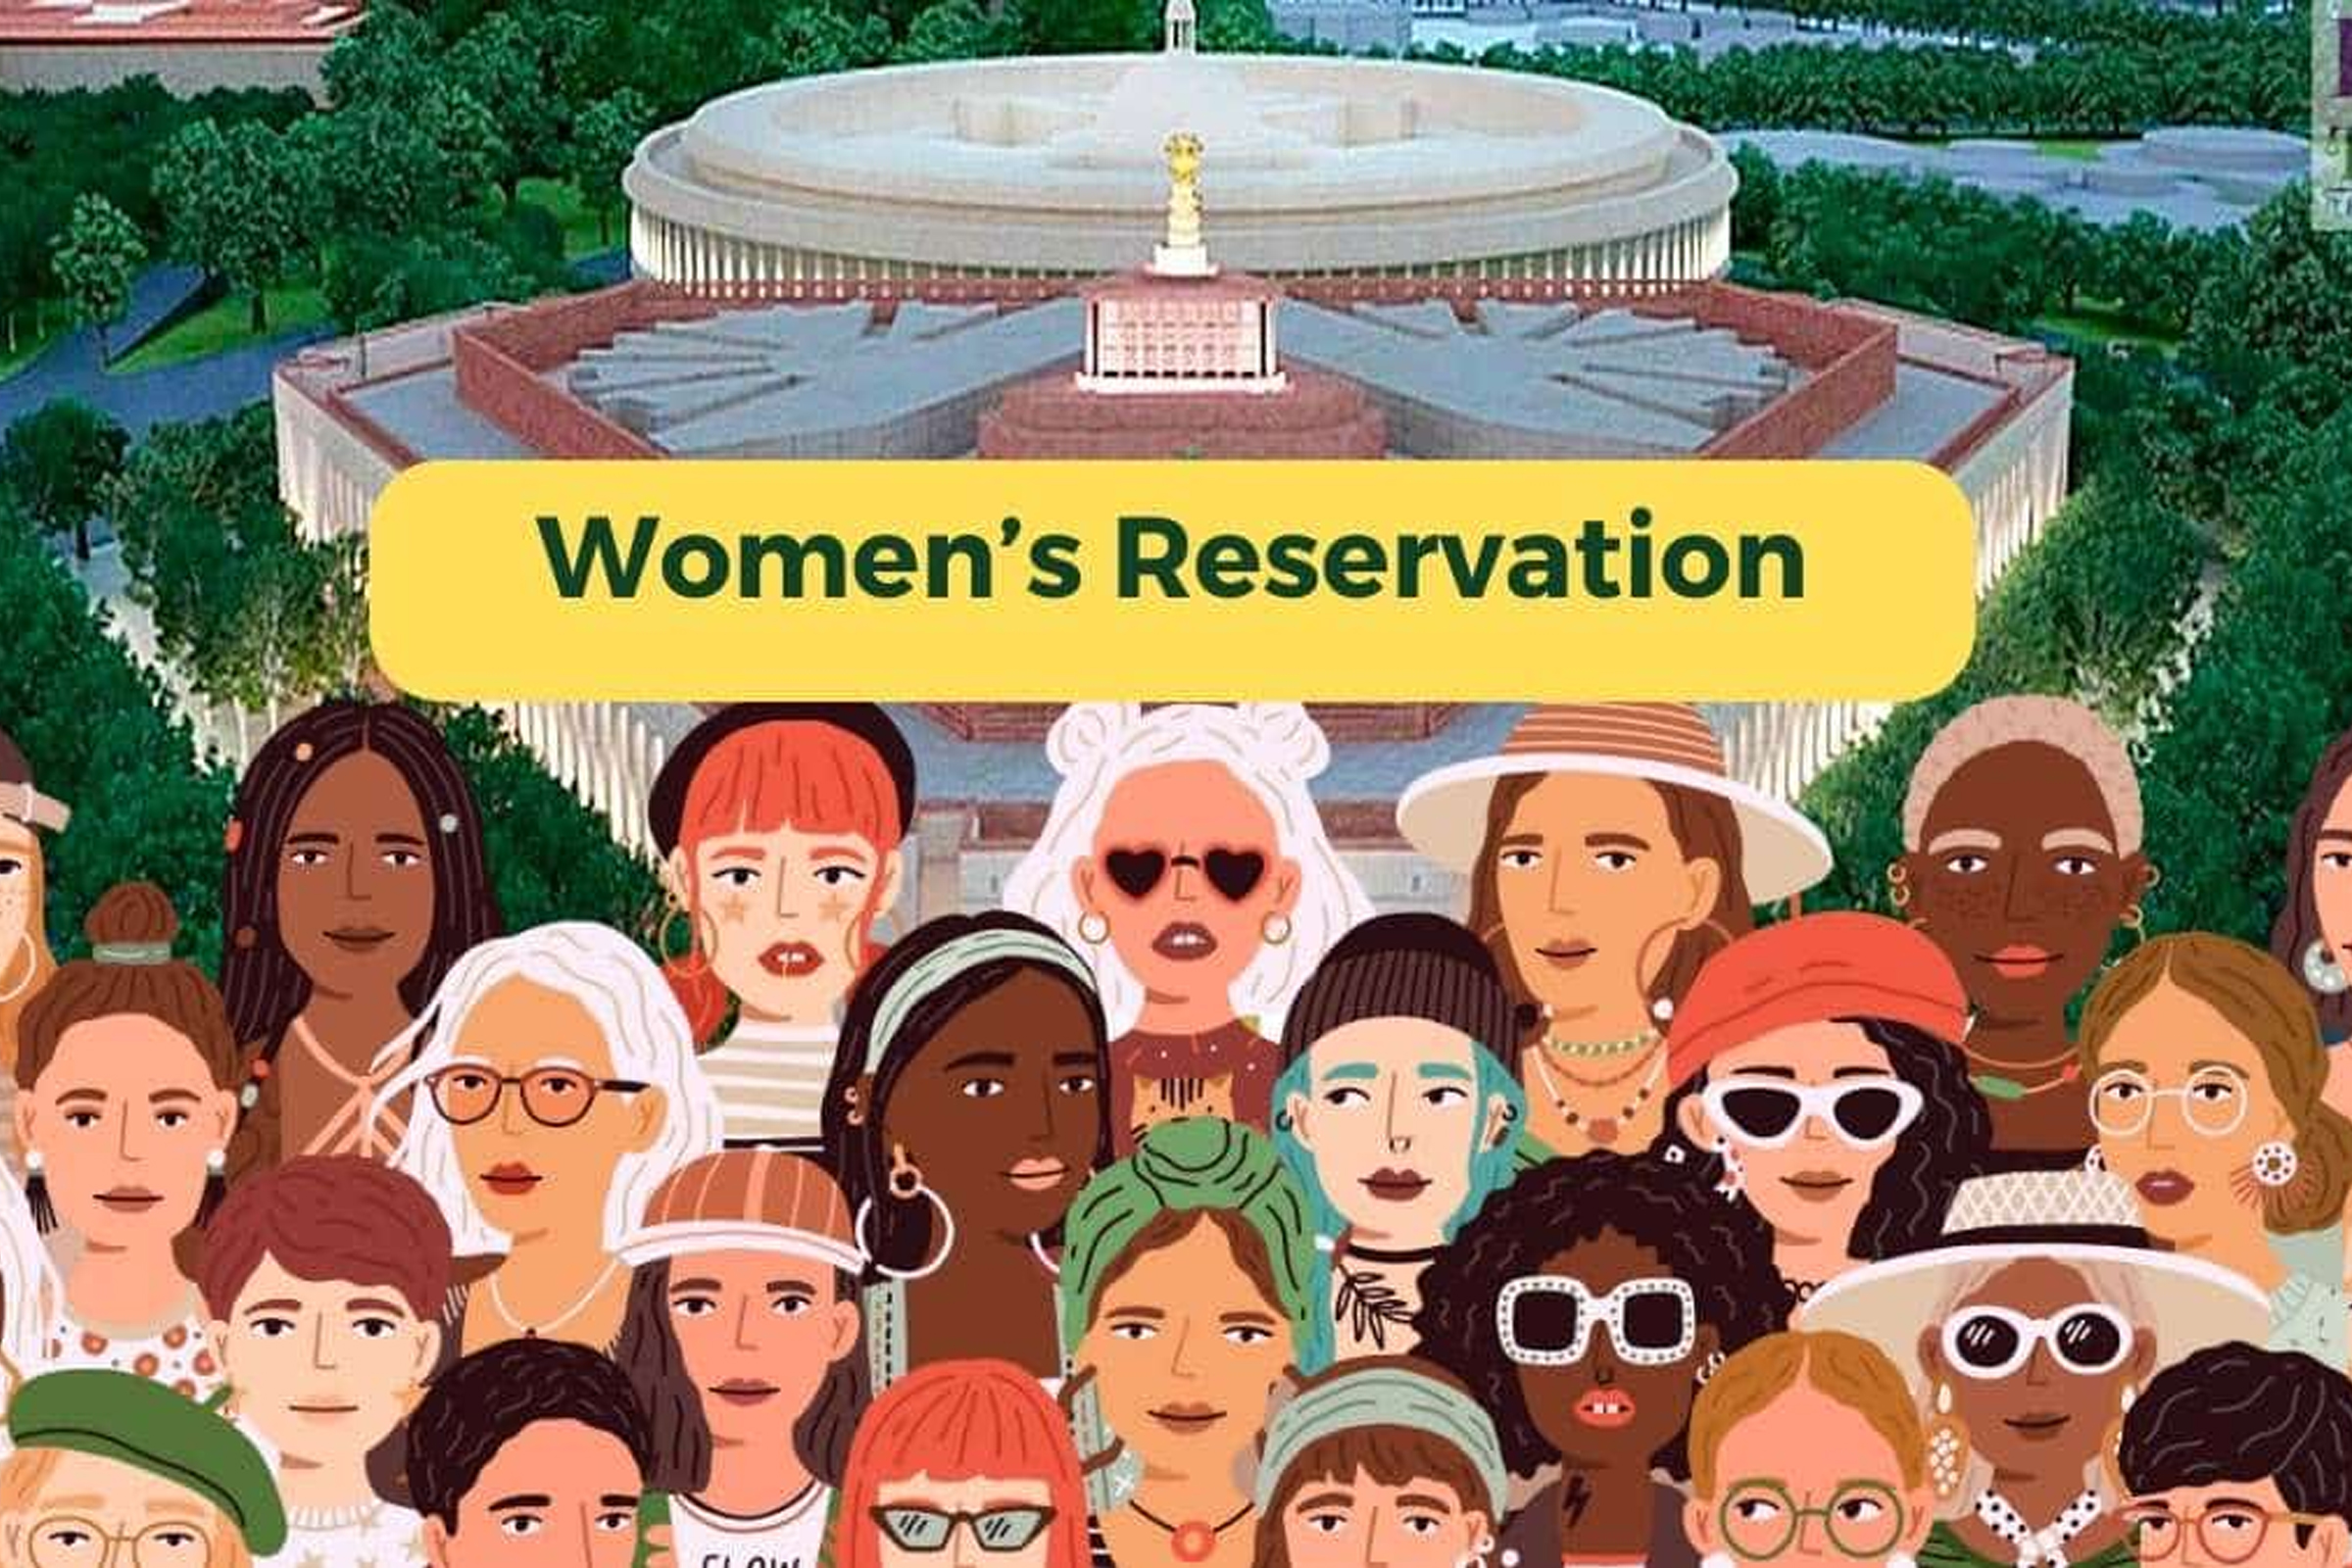 Women’s Reservation Bill